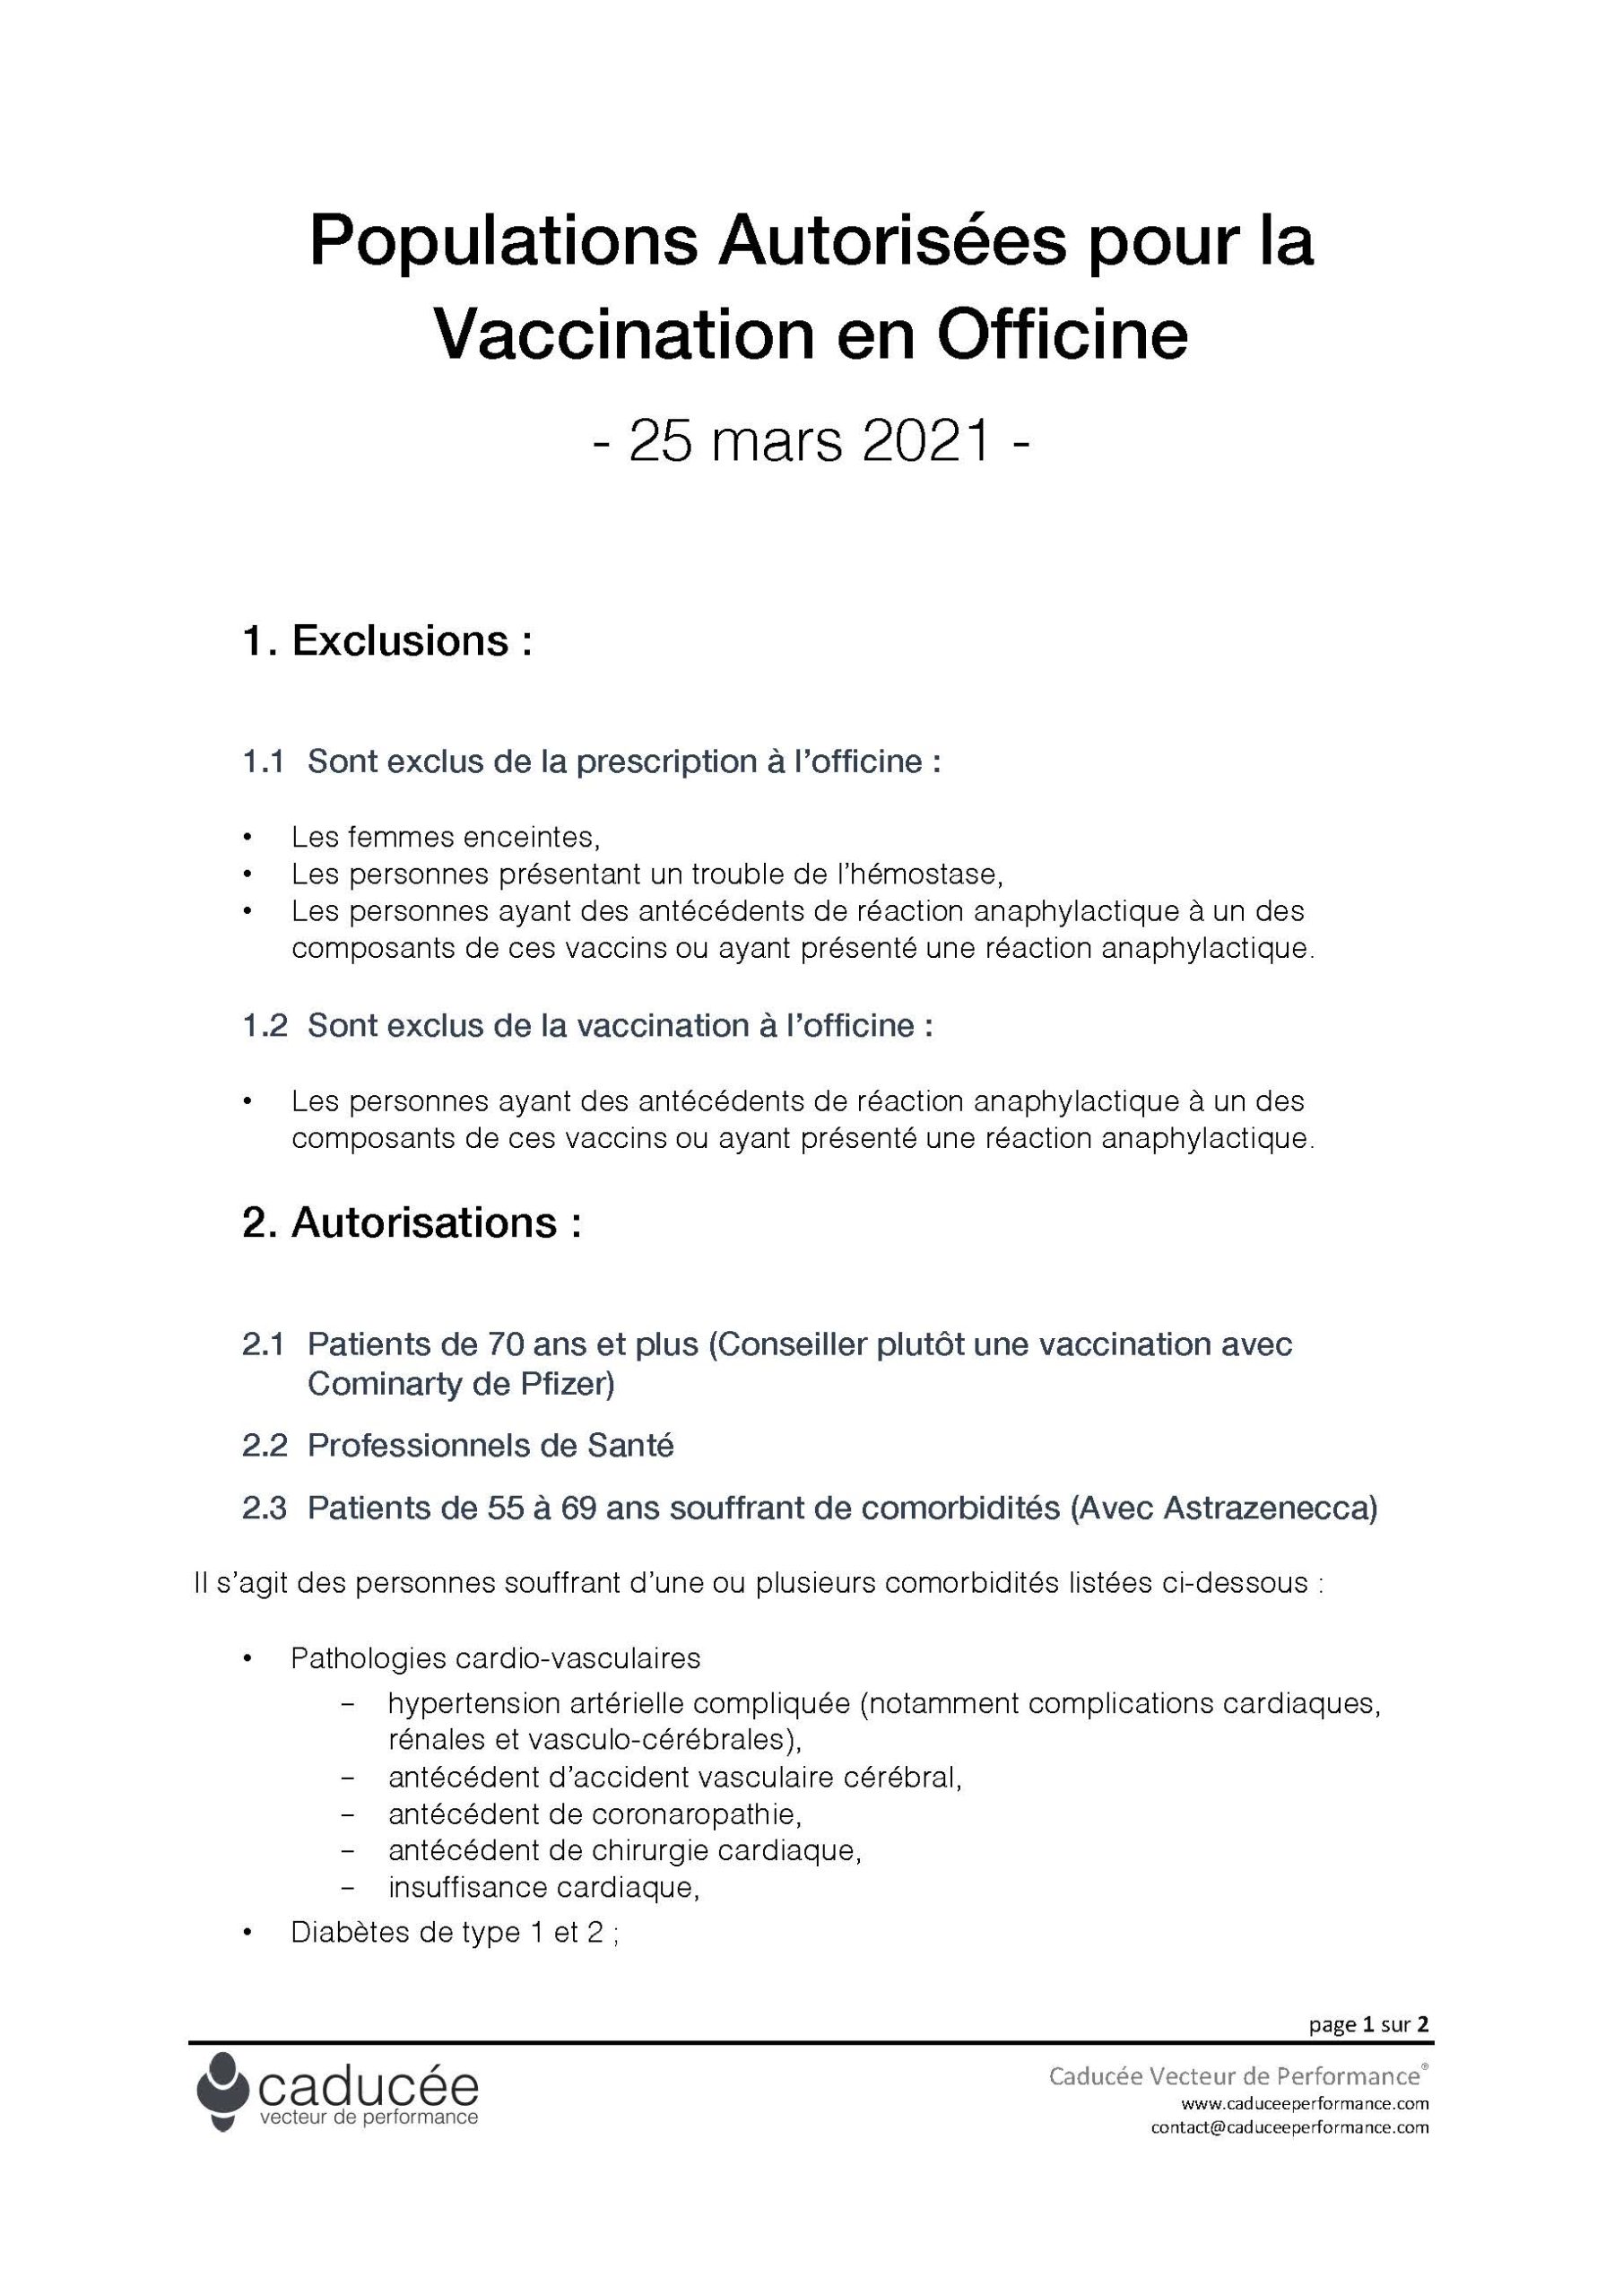 Populations Autorisees pour la Vaccination en Officine Page 1 scaled